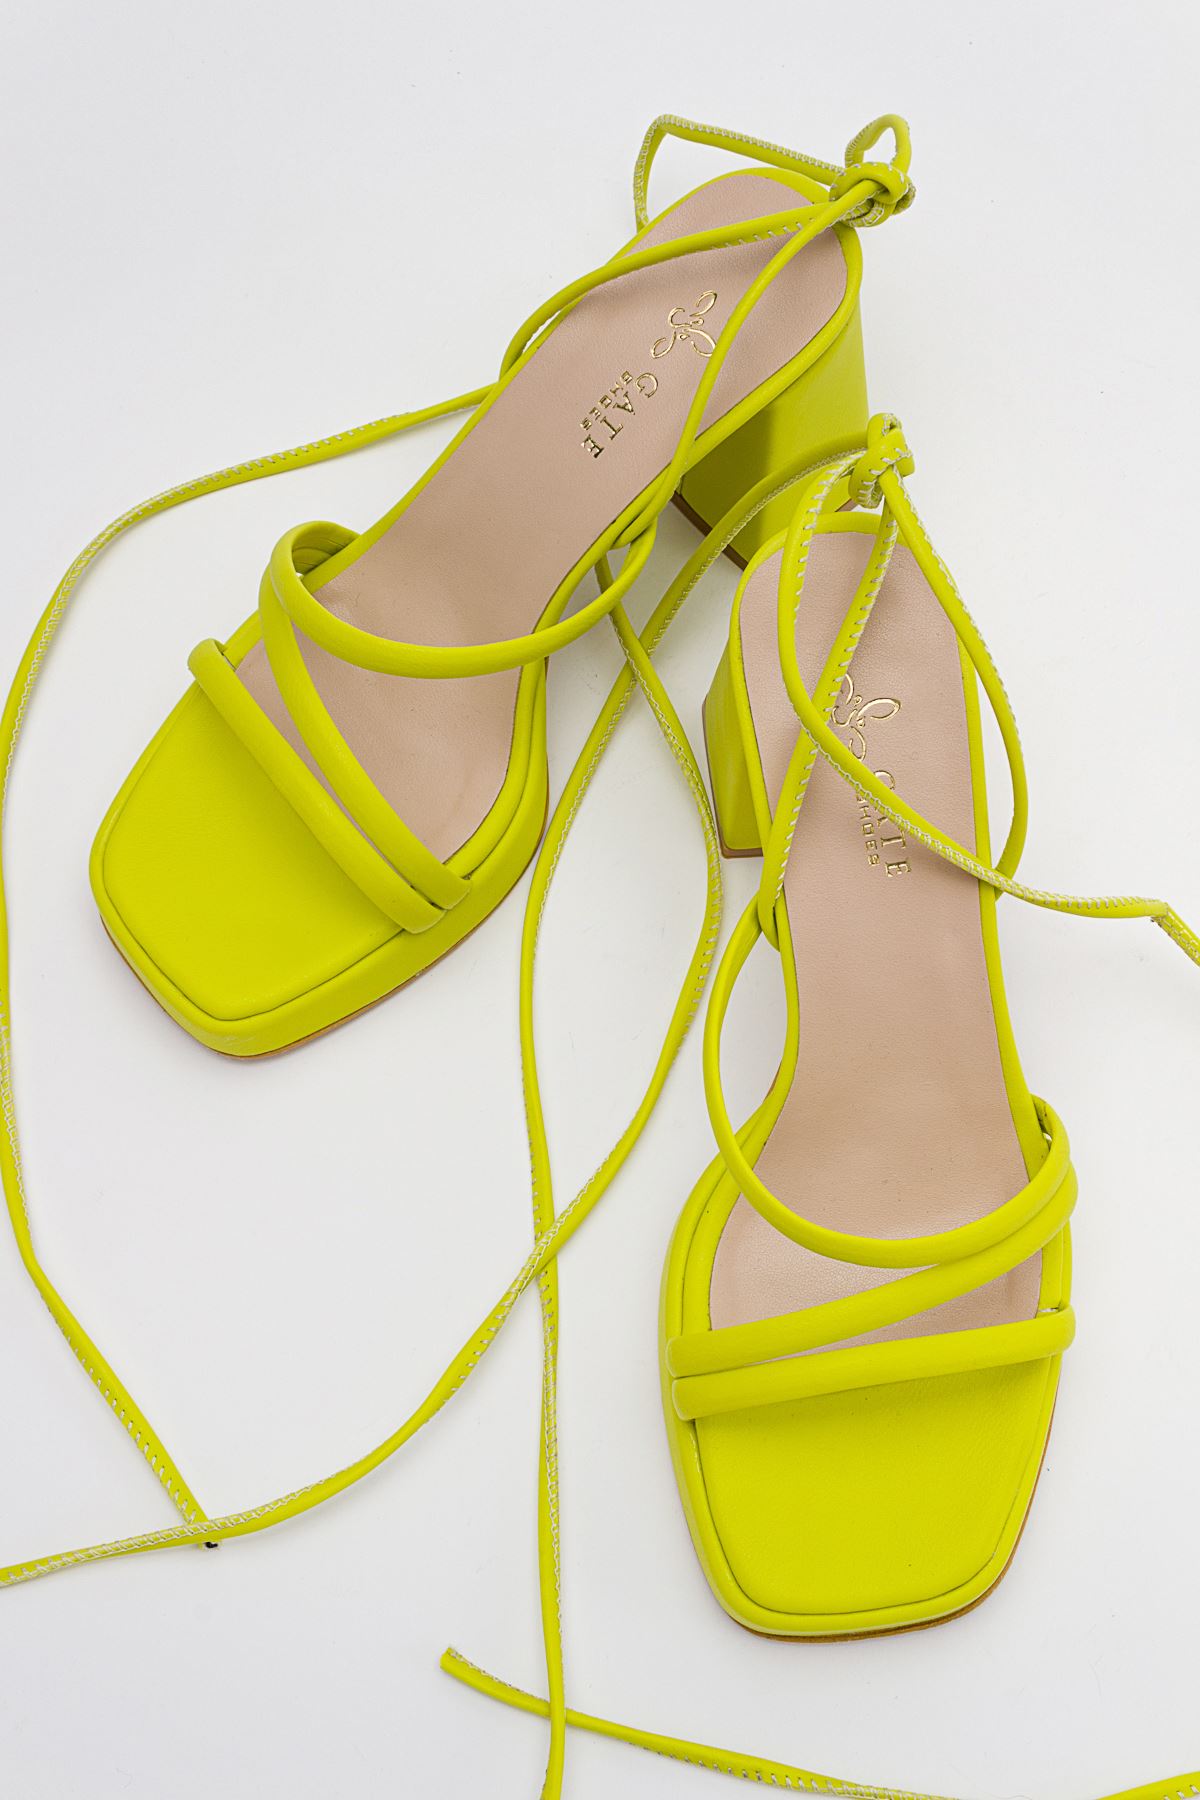 Kadın Bantlı ve İpli Platform Topuklu Kadın Sandalet Carisa Platform Gate Shoes-Lime Yeşil